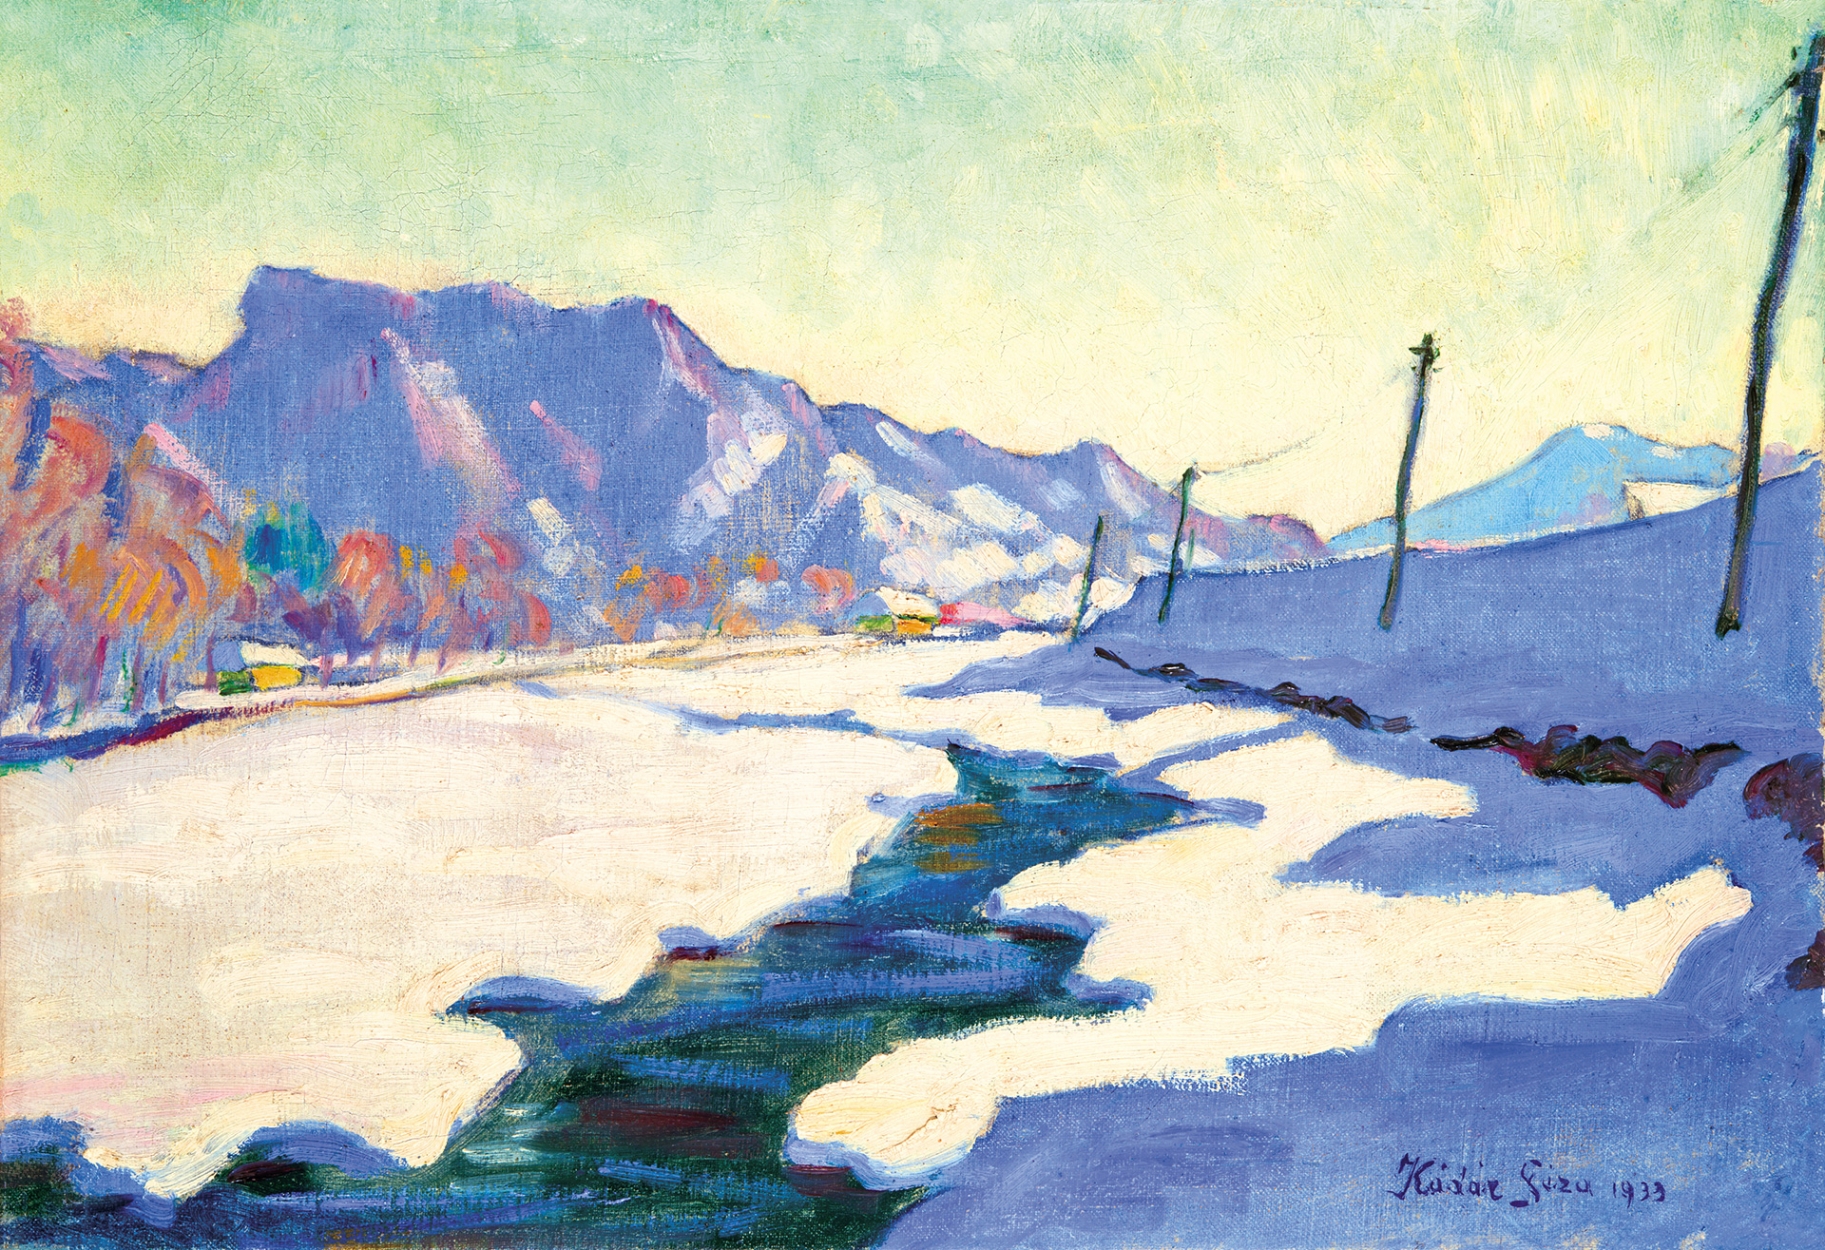 Kádár Géza (1878-1952) Riverside at Winter, 1933